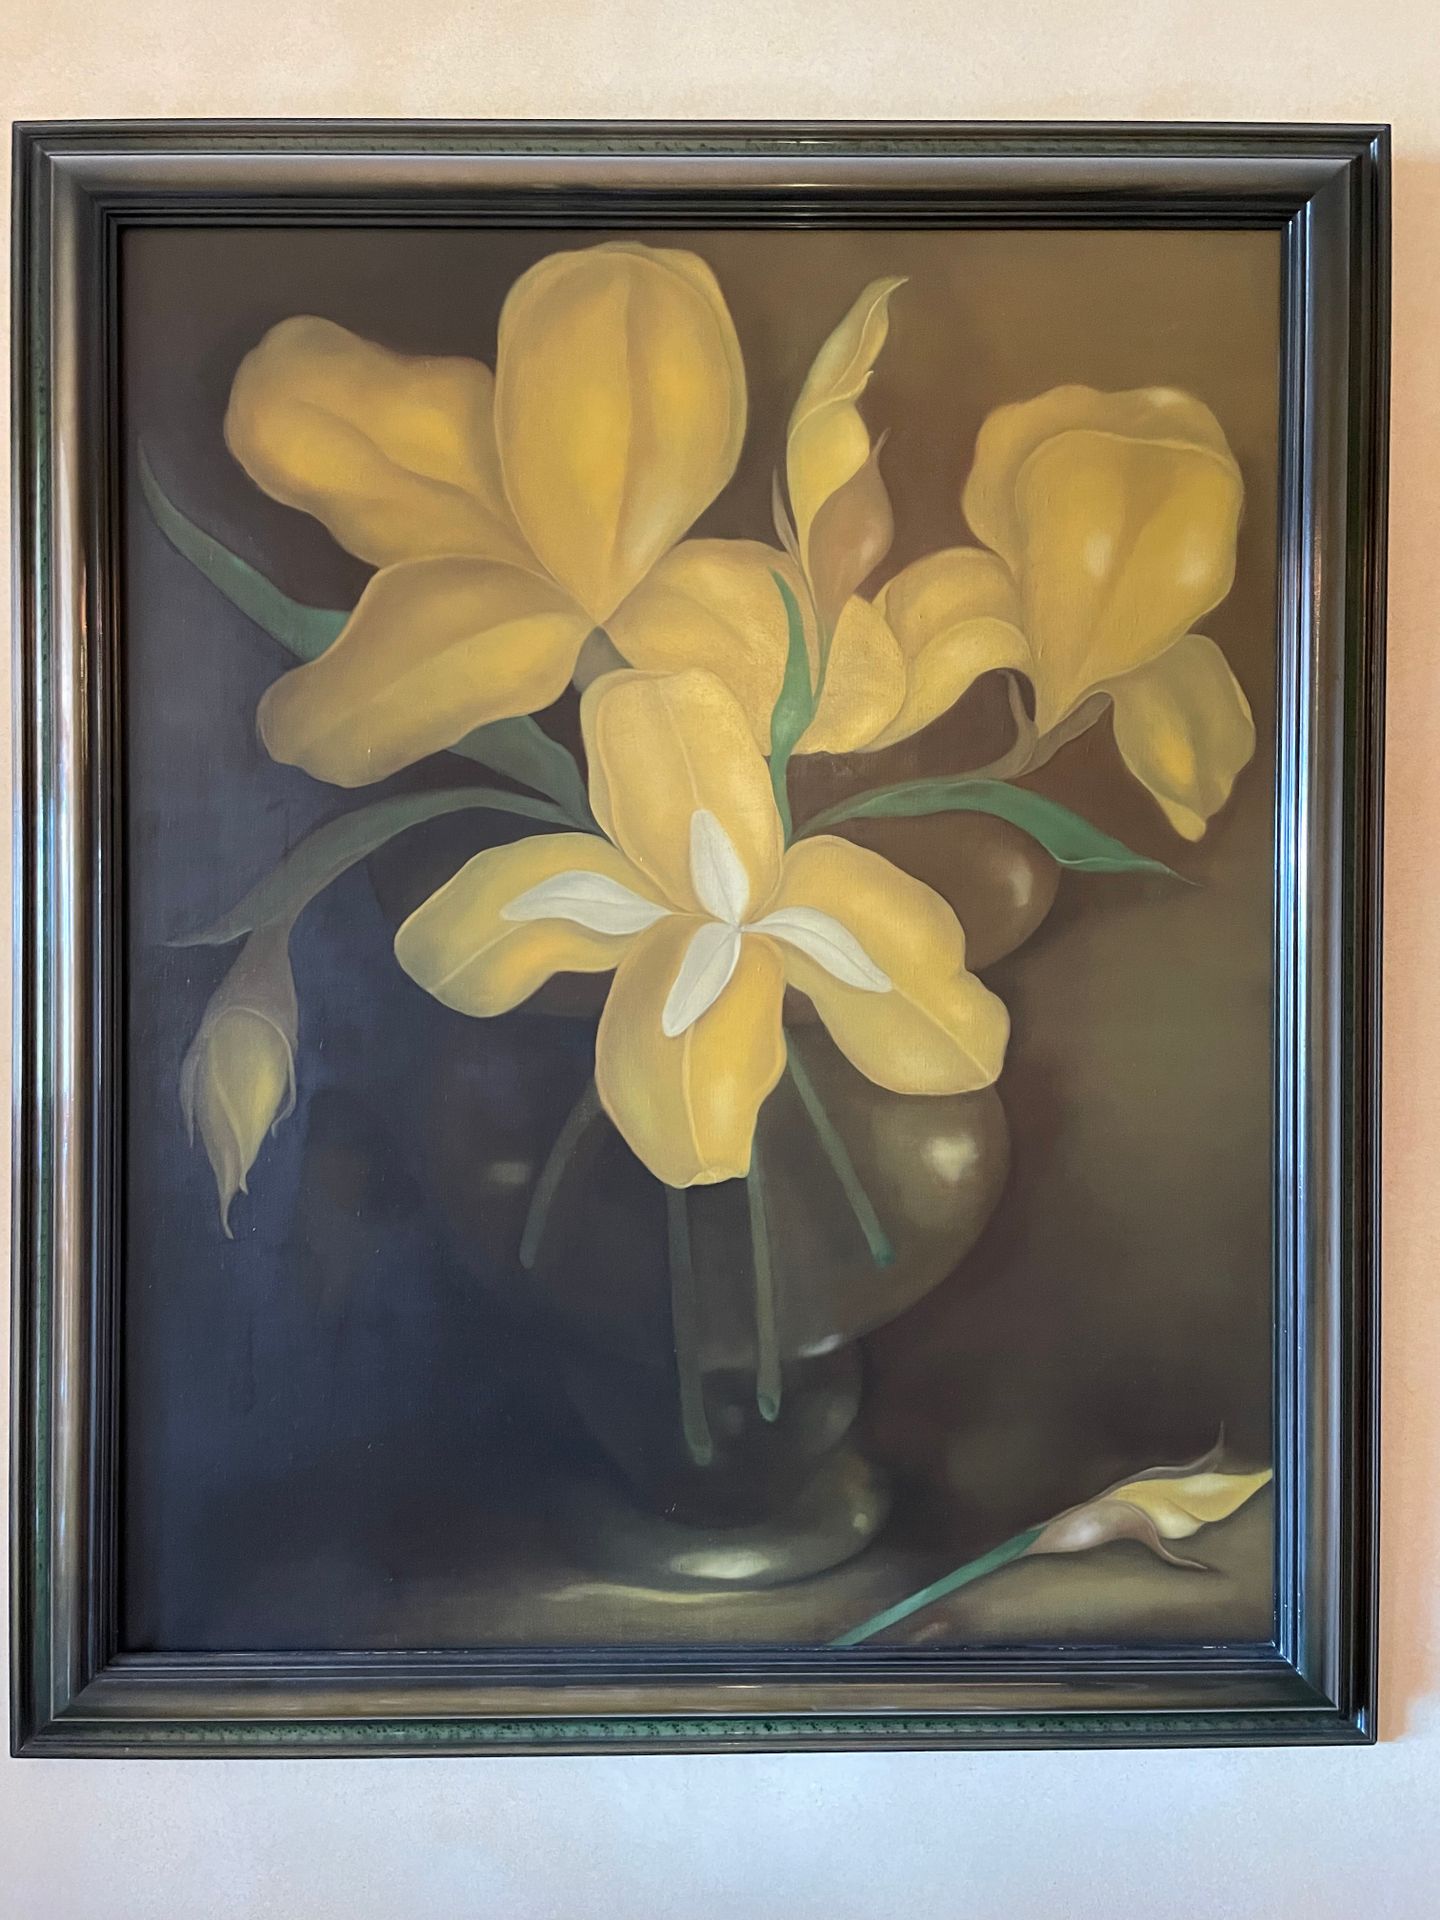 Ecole Moderne Vasi di iris gialli
Olio su tela
108x88 cm.